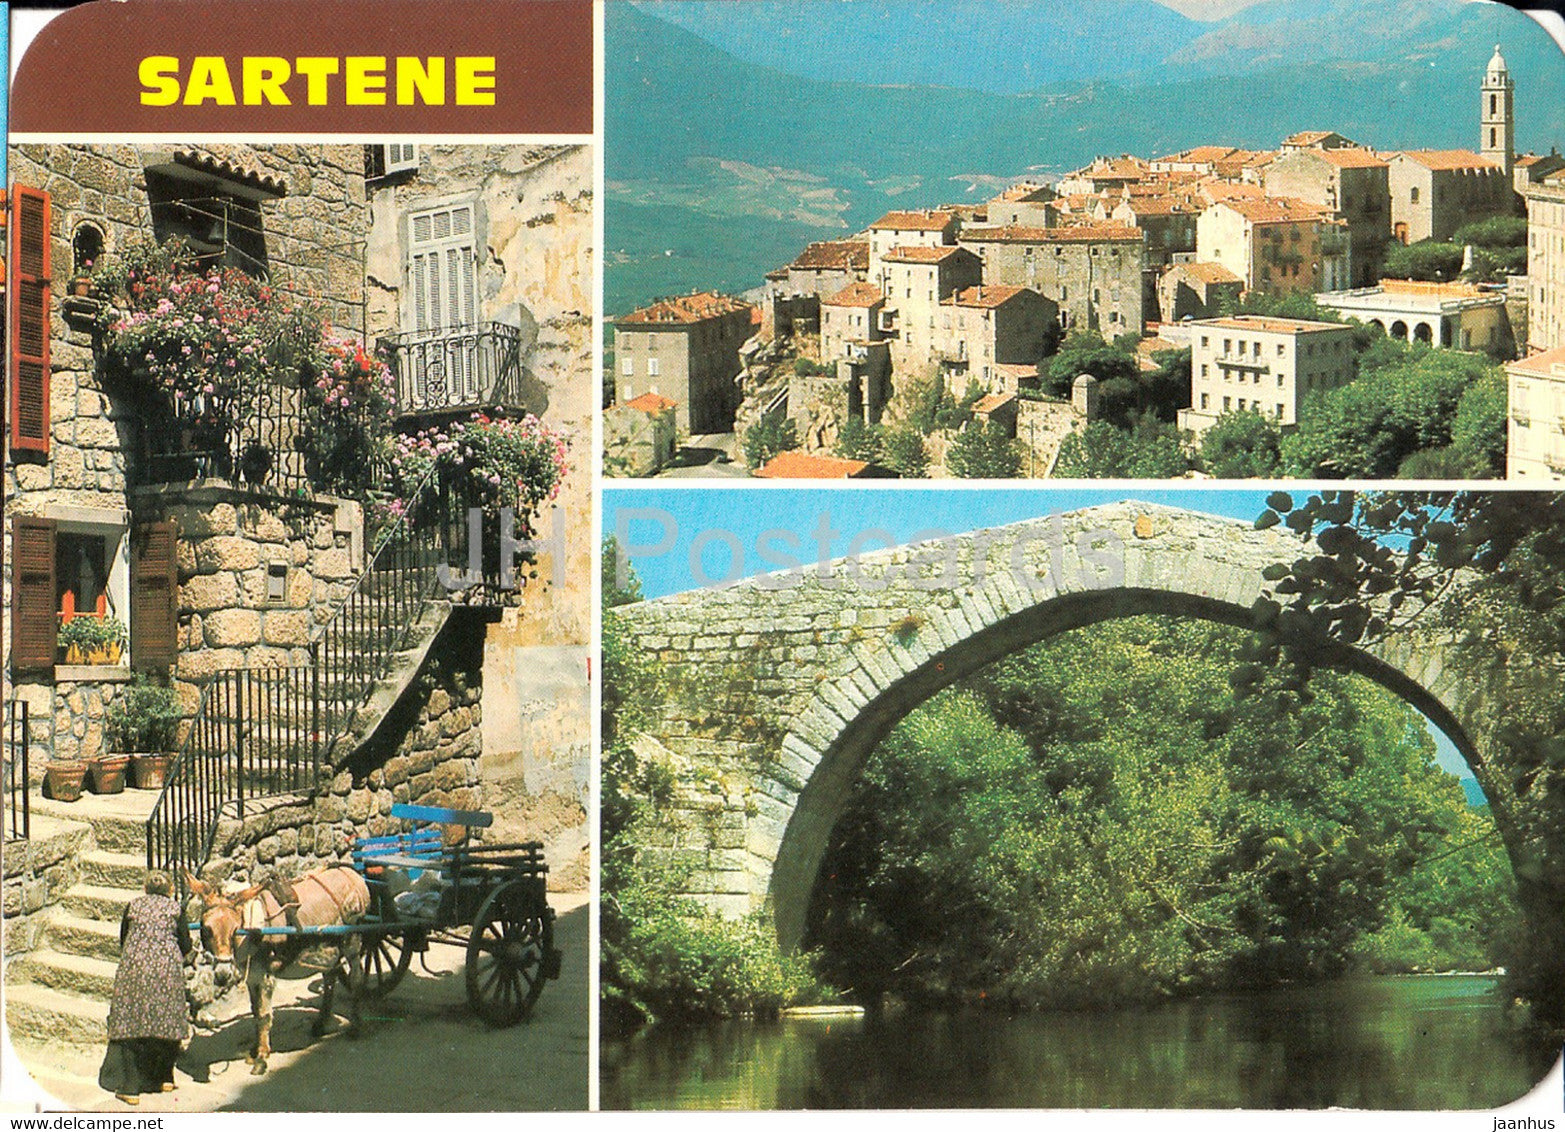 Sartene - Une Ruelle Fleurie - Le Pont genois Spin'a Cavaddu - Vue Generale - bridge - multiview - France - unused - JH Postcards